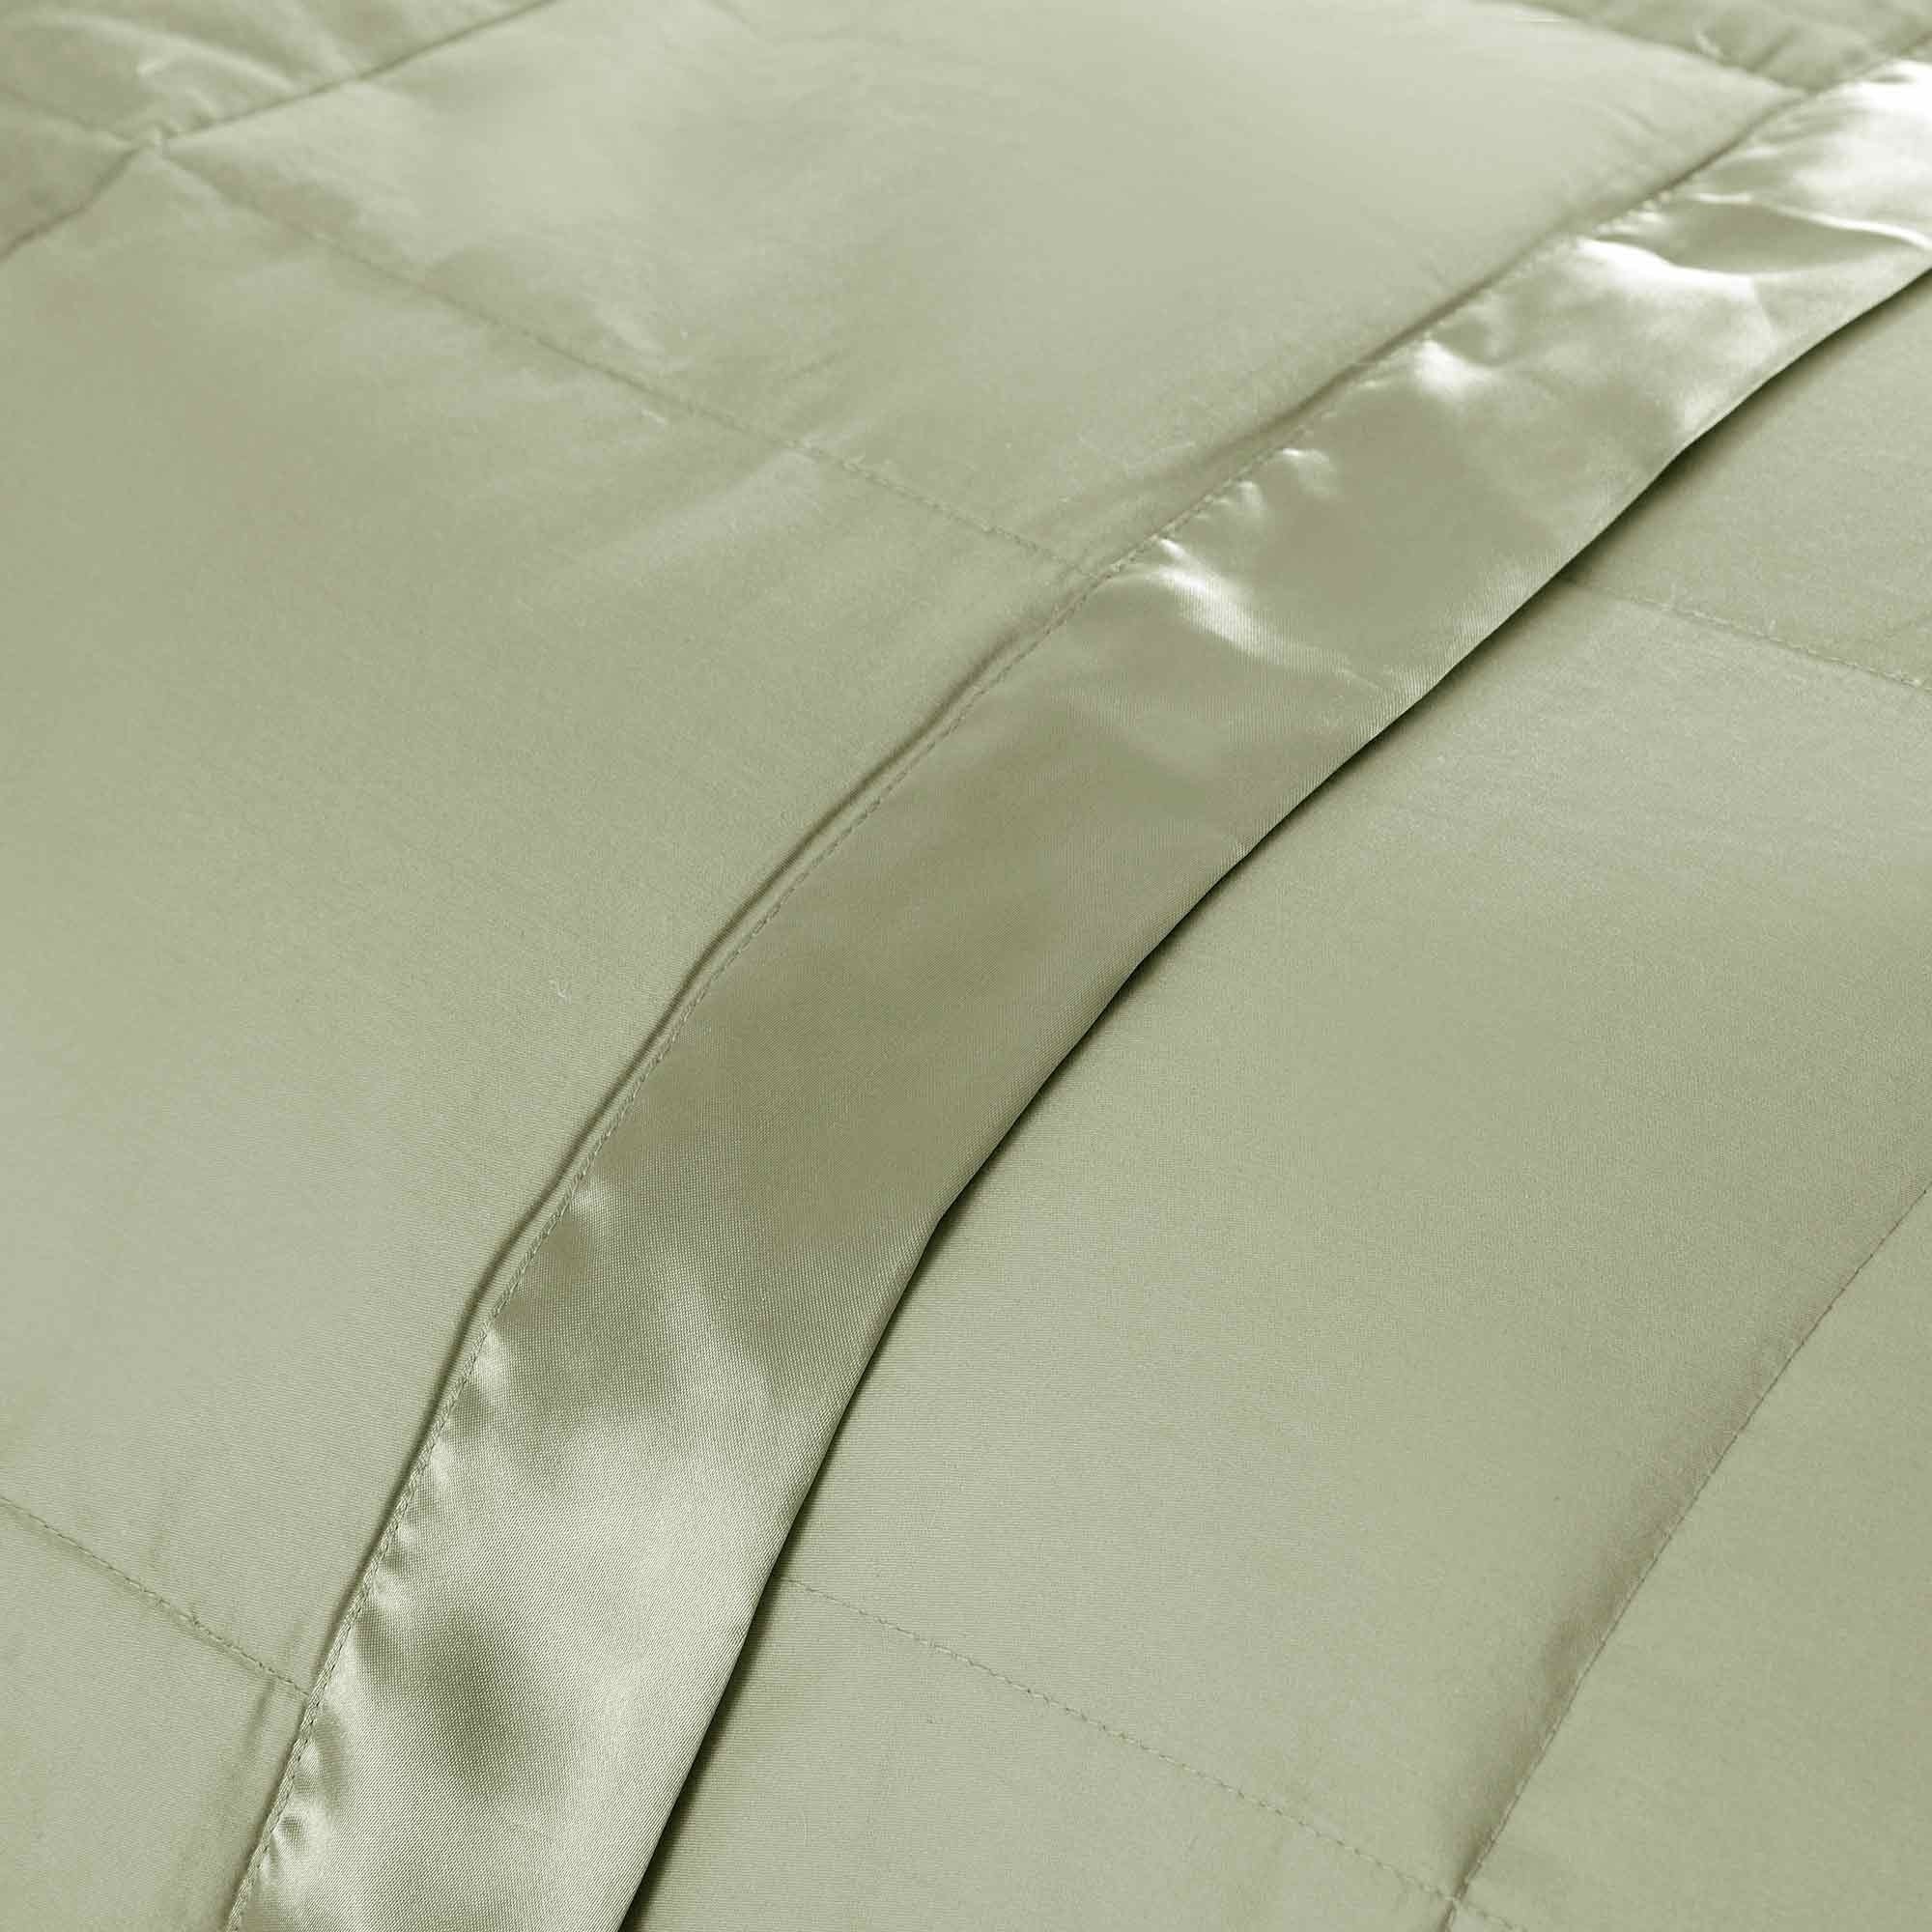 Cozy Soft Lightweight Oversized Down Blanket With Satin Trim, All Season Blanket, Sleep Essentials Versatile Blanket, 90 X90